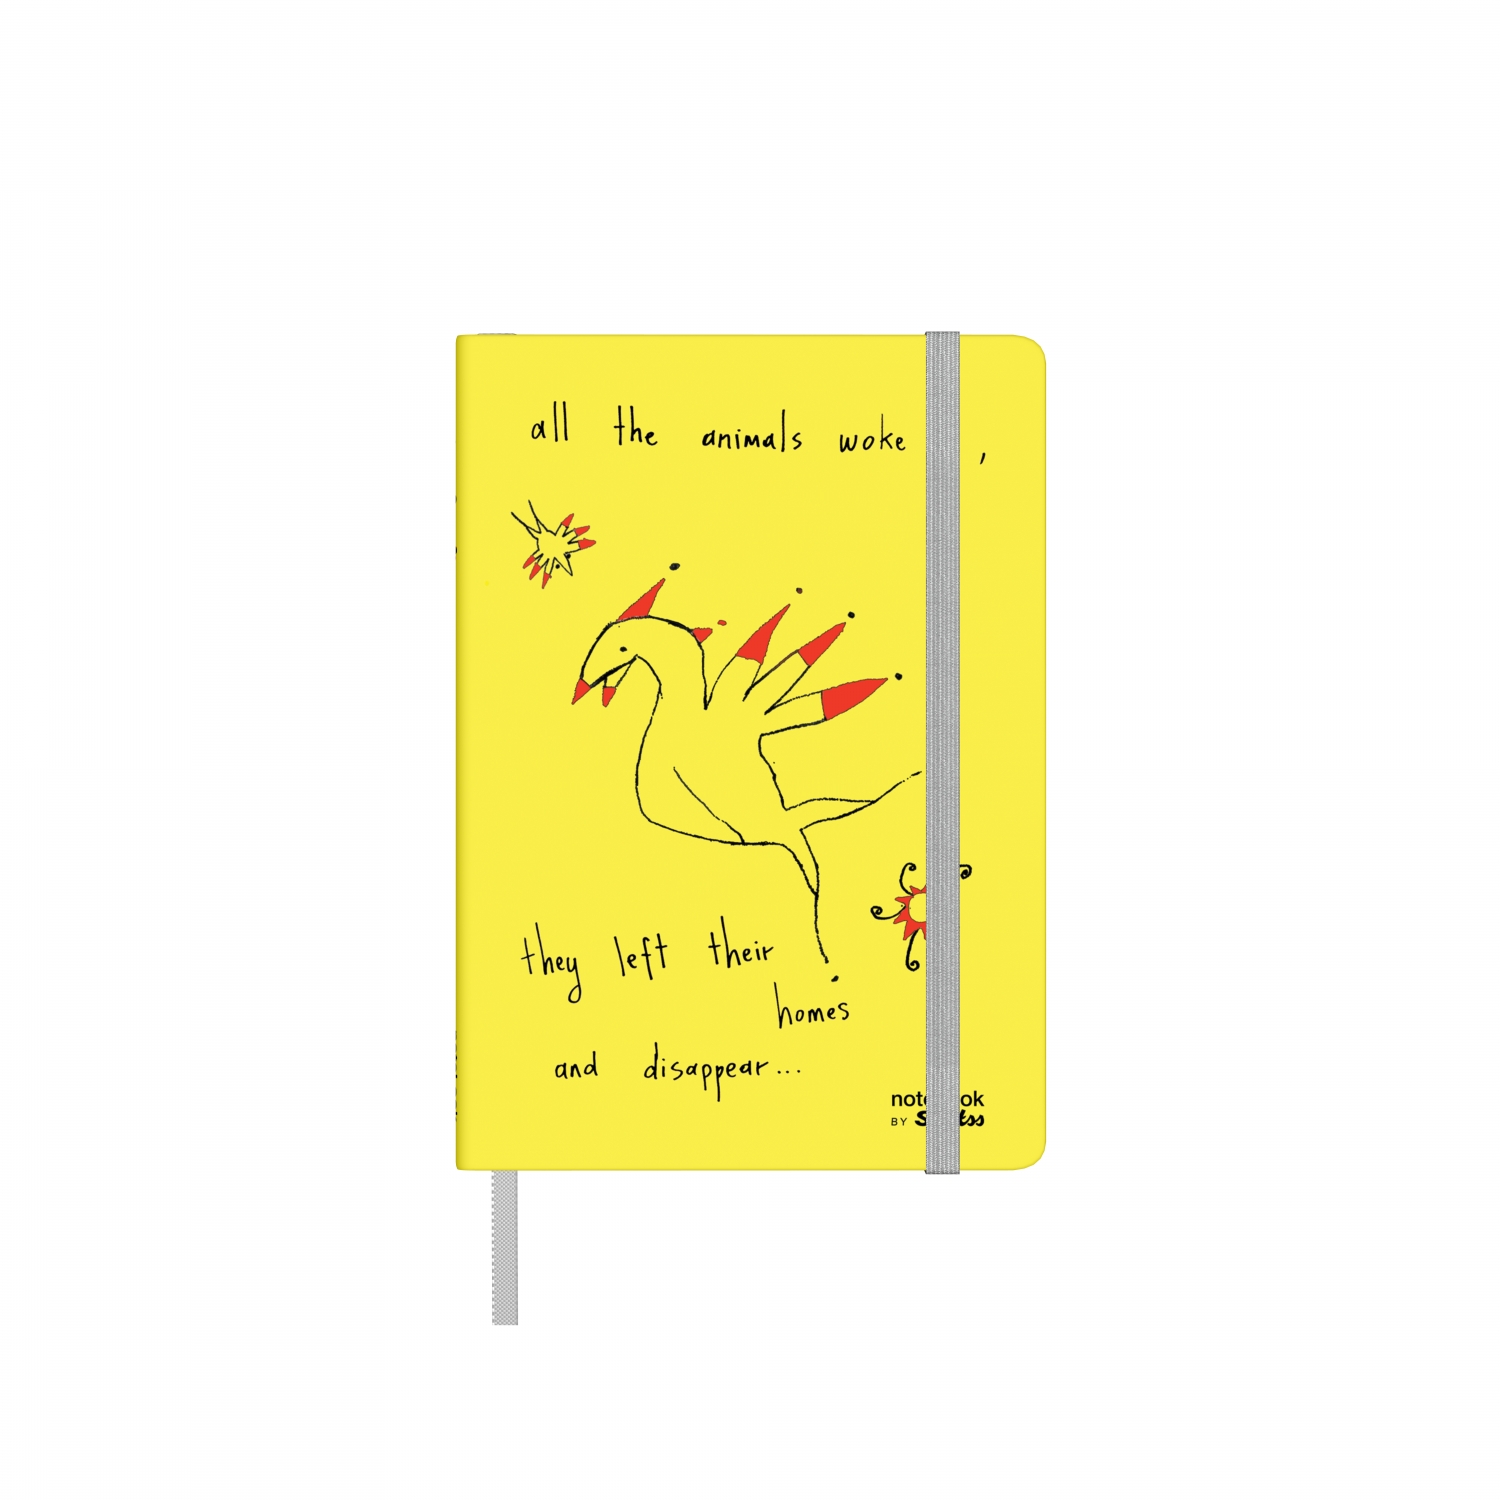 Бележник Scrikss Notelook Notebook Animal Yellow, модел 82529,  Животни в Жълто, на райета,  A6